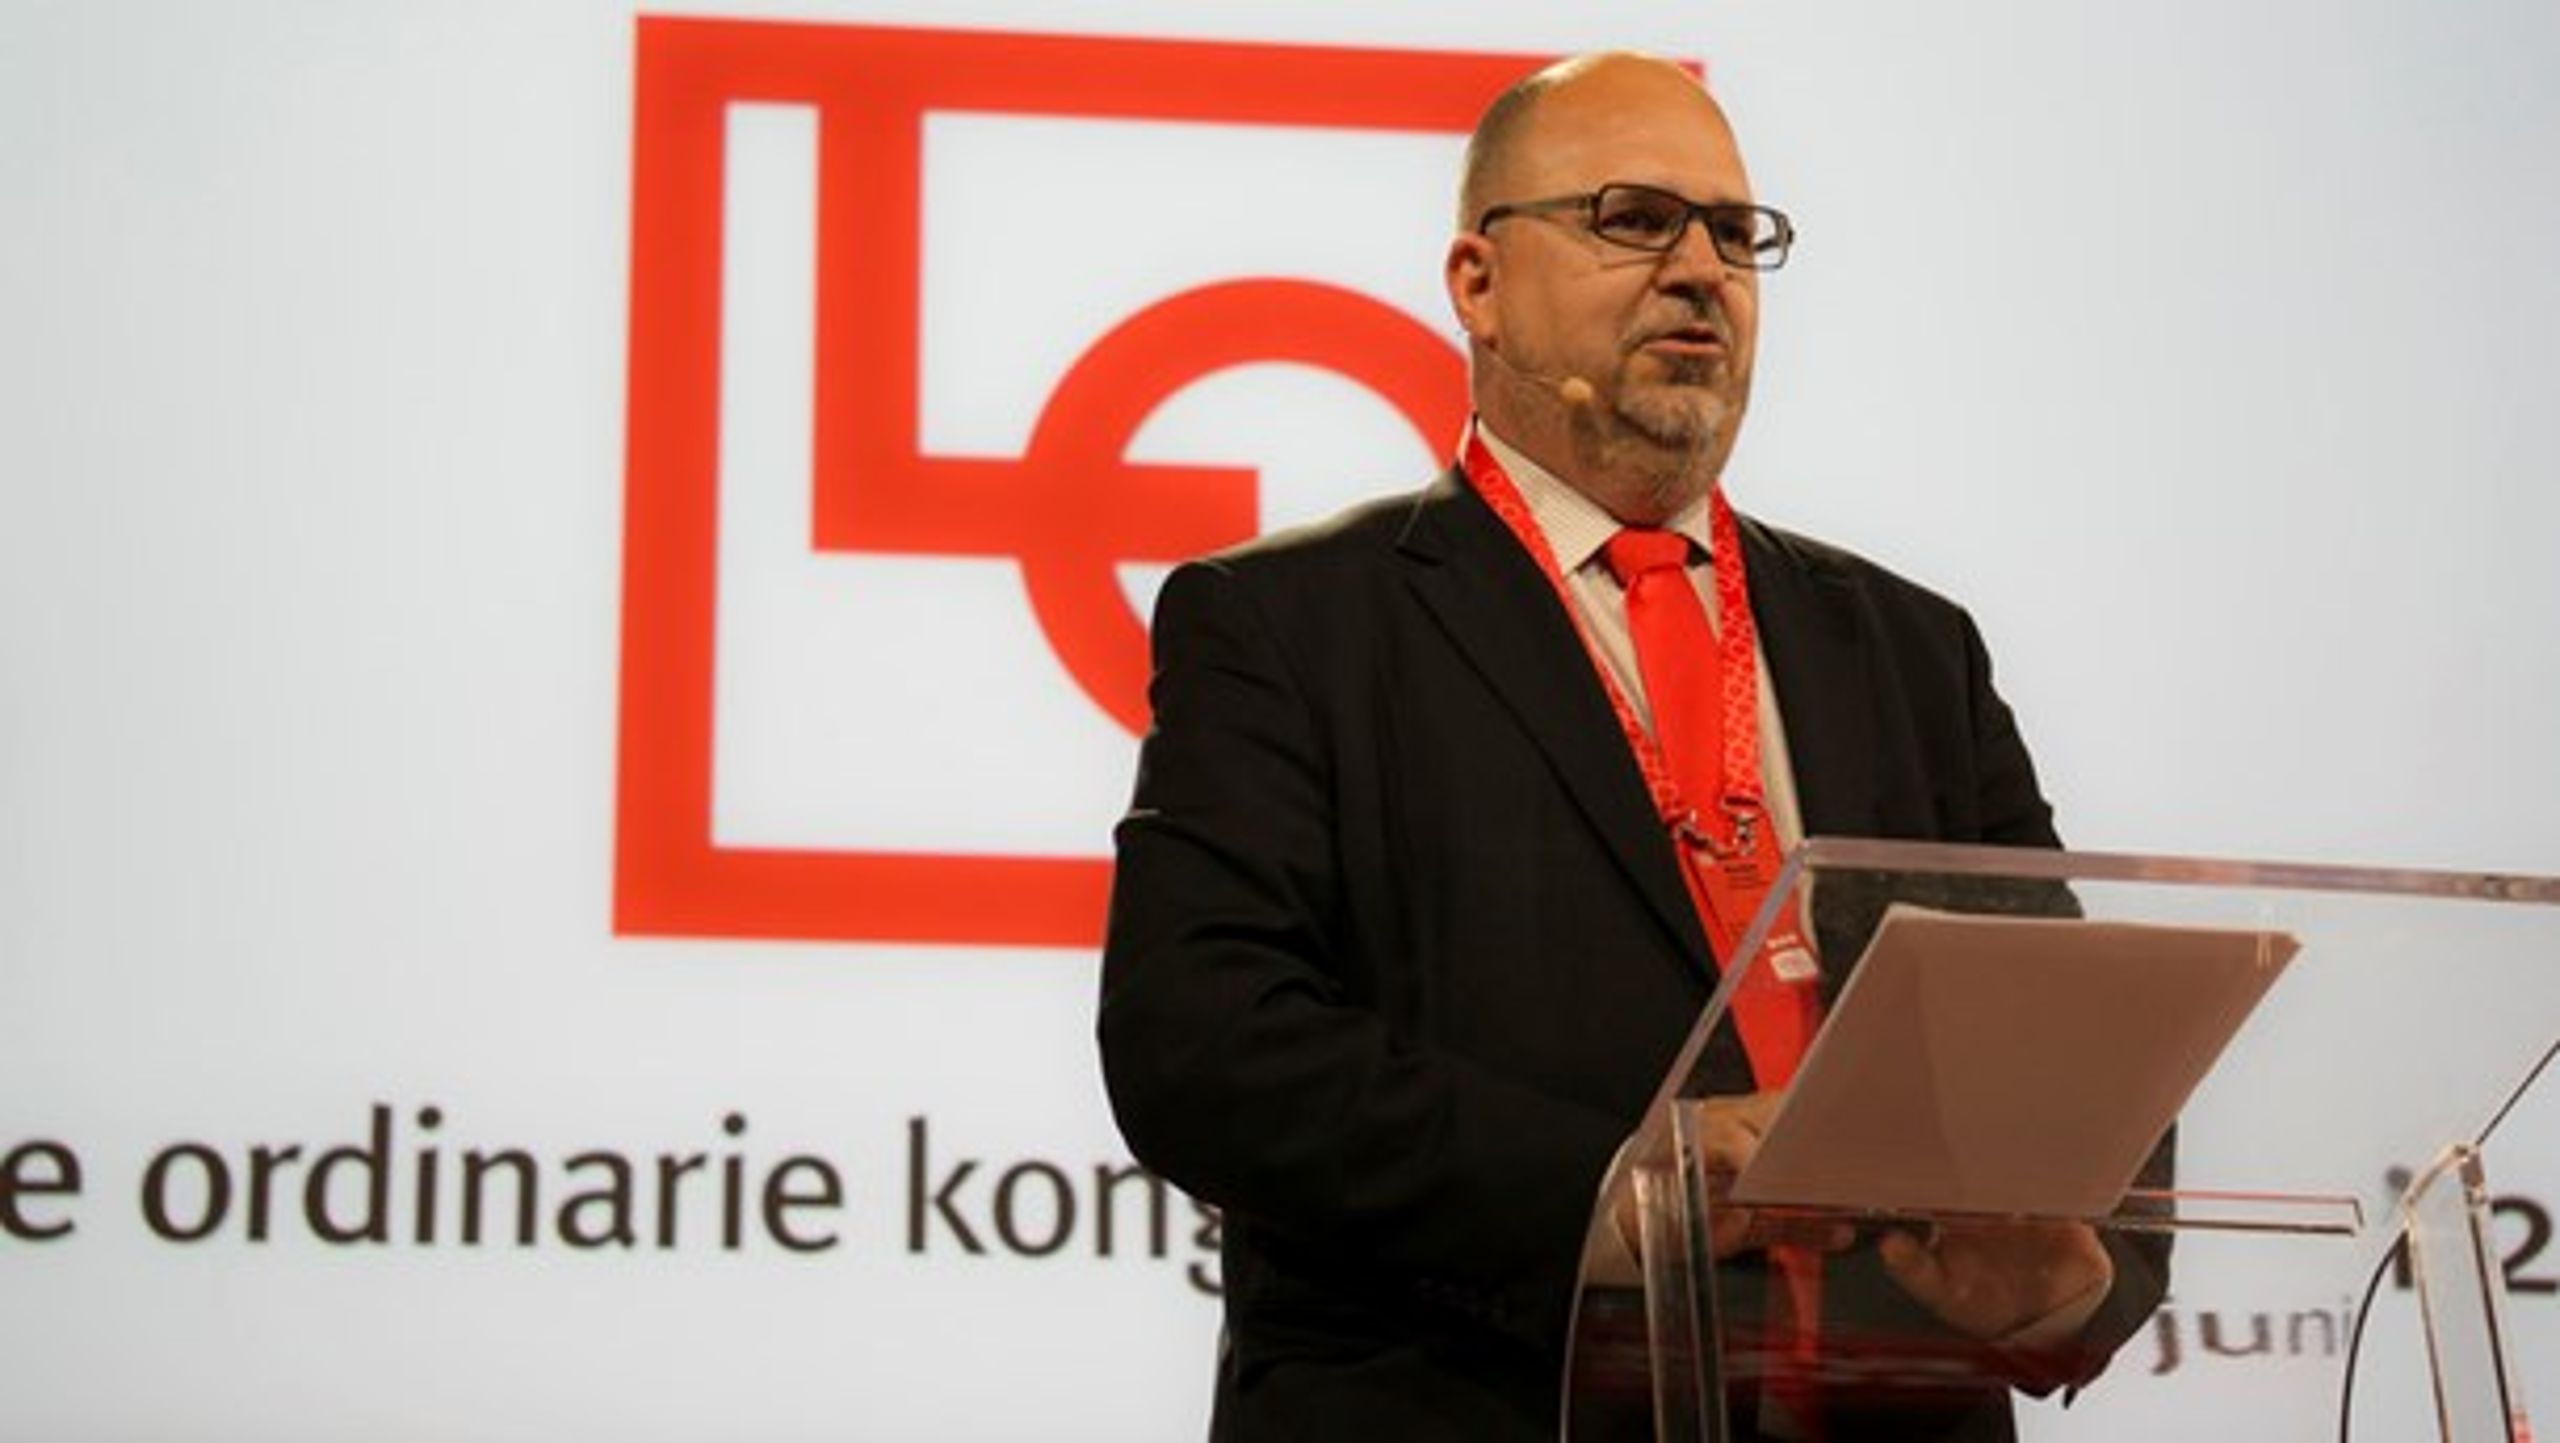 Karl-Petter Thorwaldsson, omvald ordförande, talar på LO-kongressen.